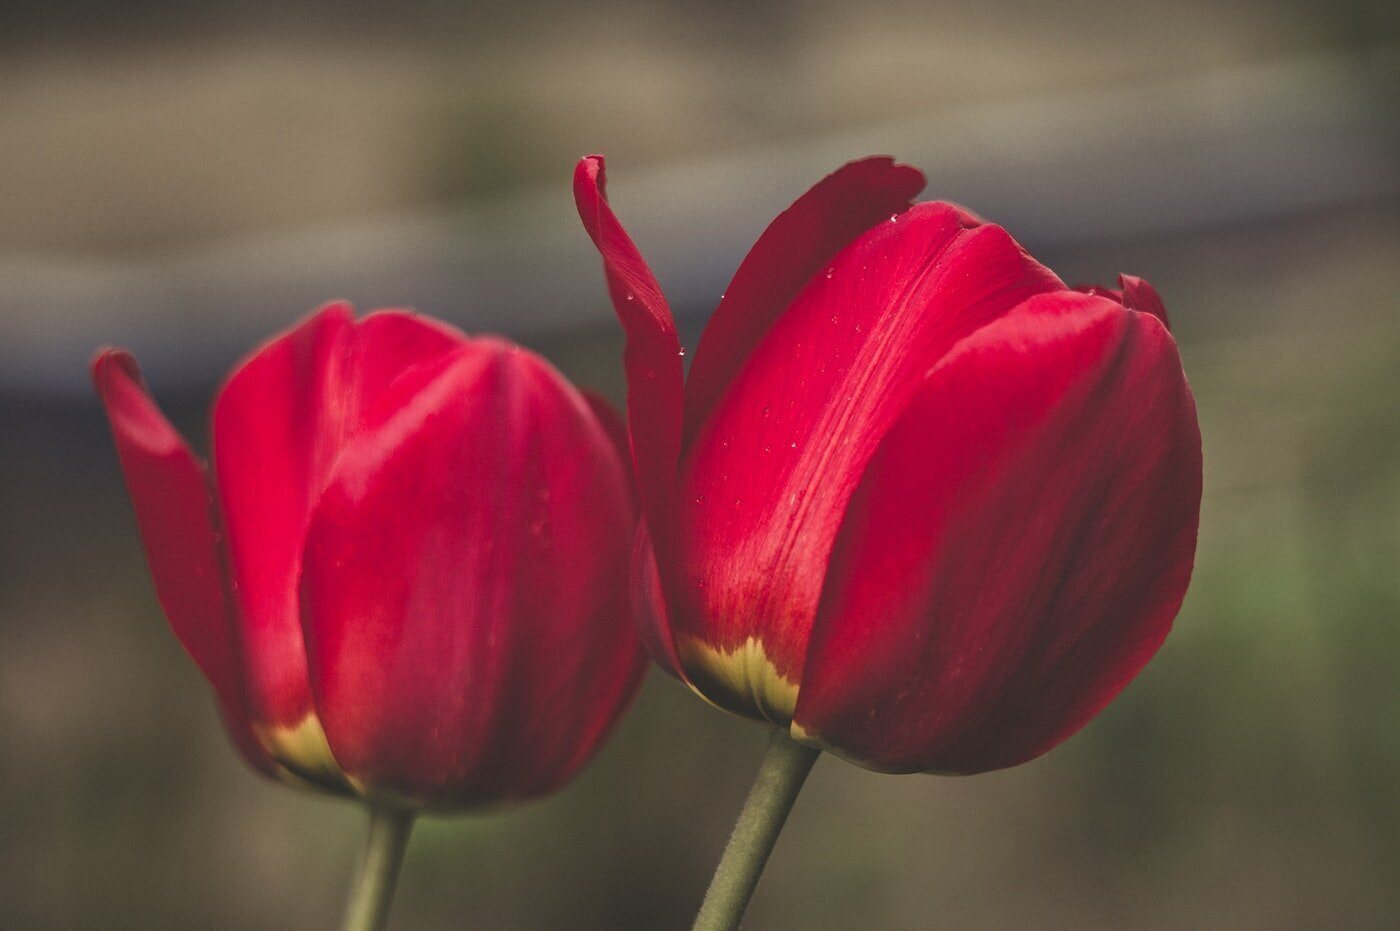 Nahaufnahme von zwei roten Tulpen - Bedeutung und Symbolik der Tulpen